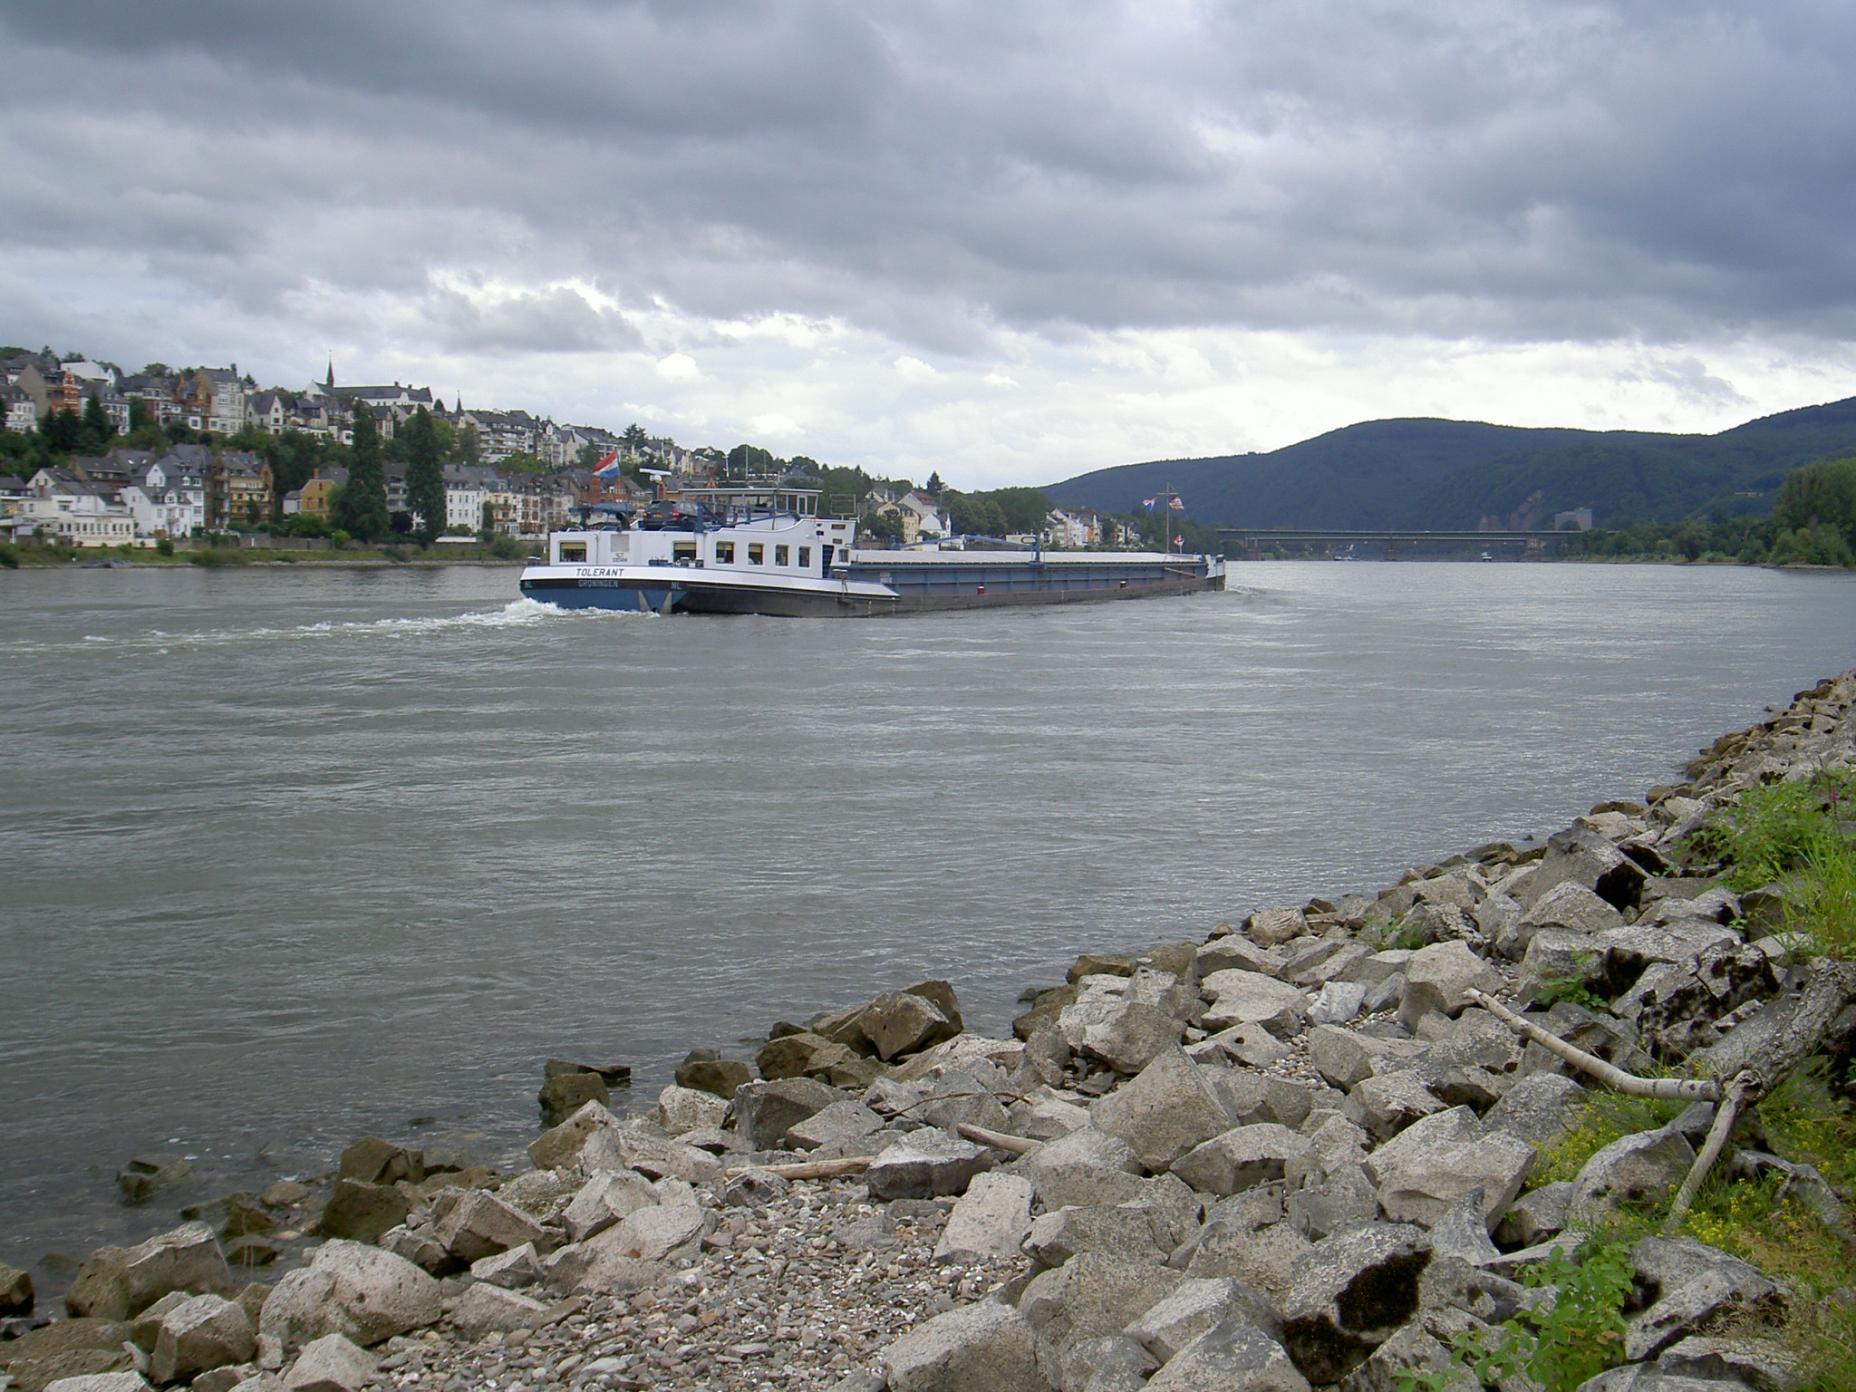 Rhein/Rhine